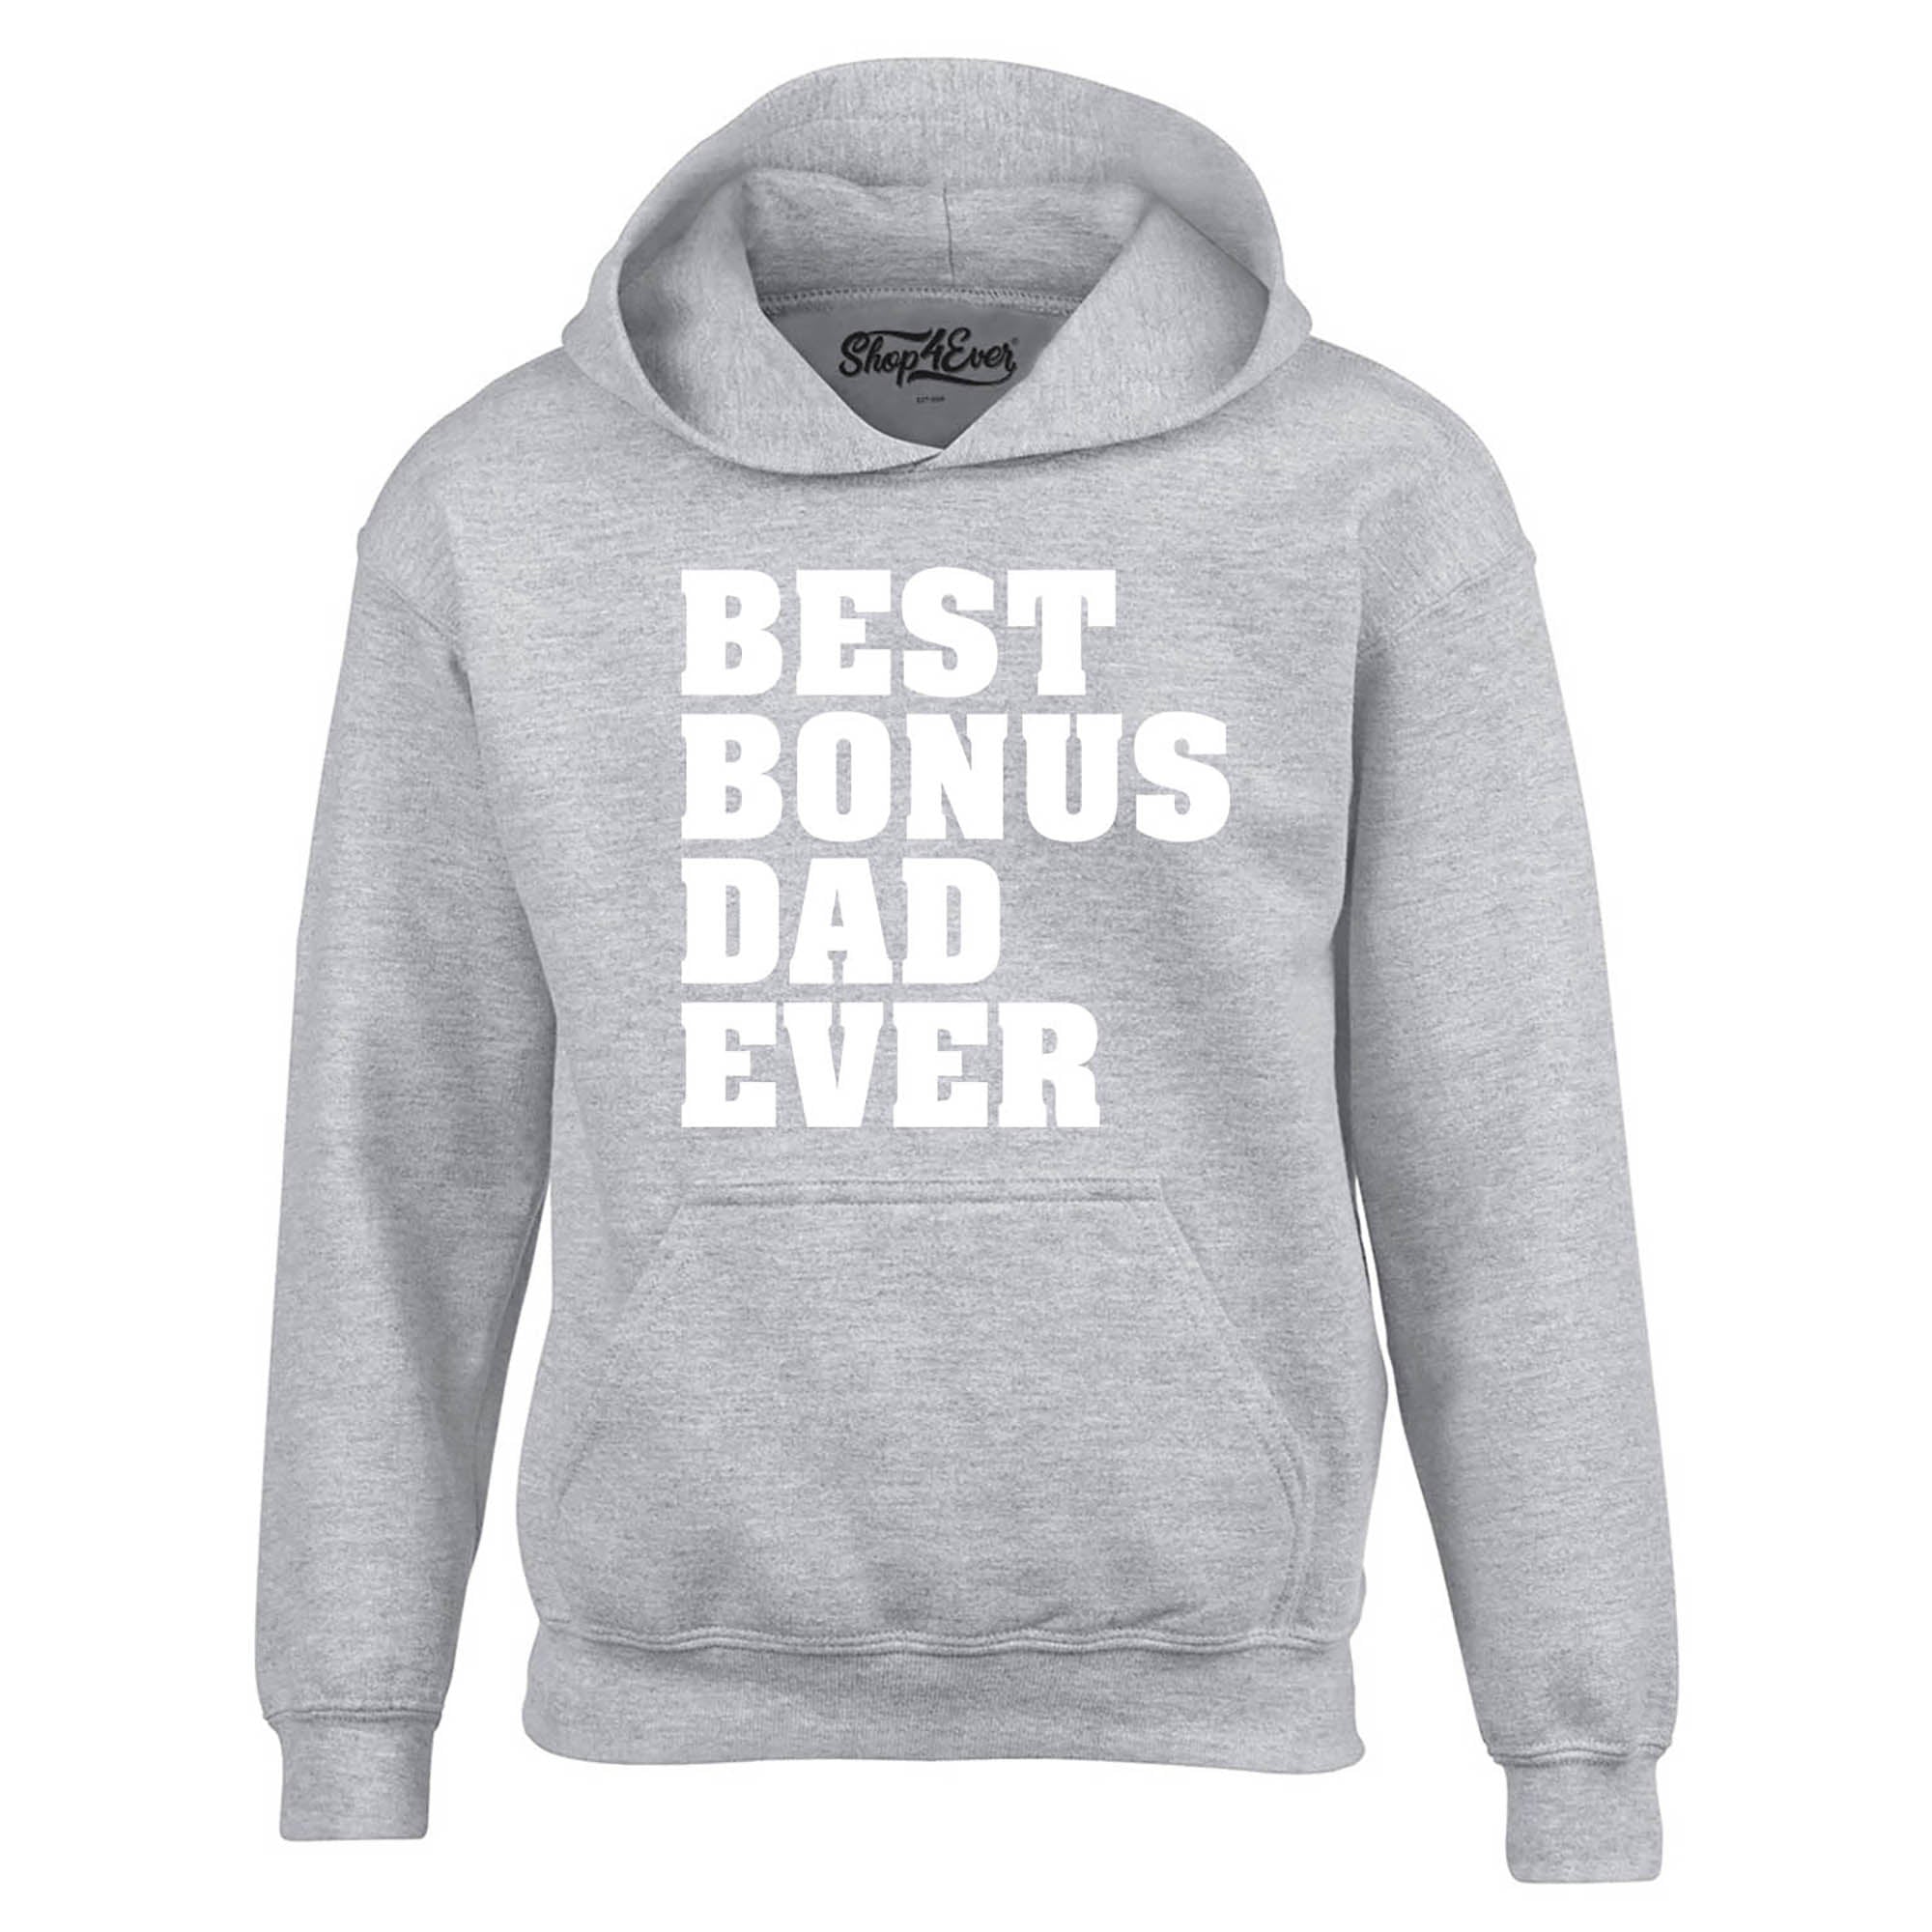 Best Bonus Dad Ever Hoodie Sweatshirts